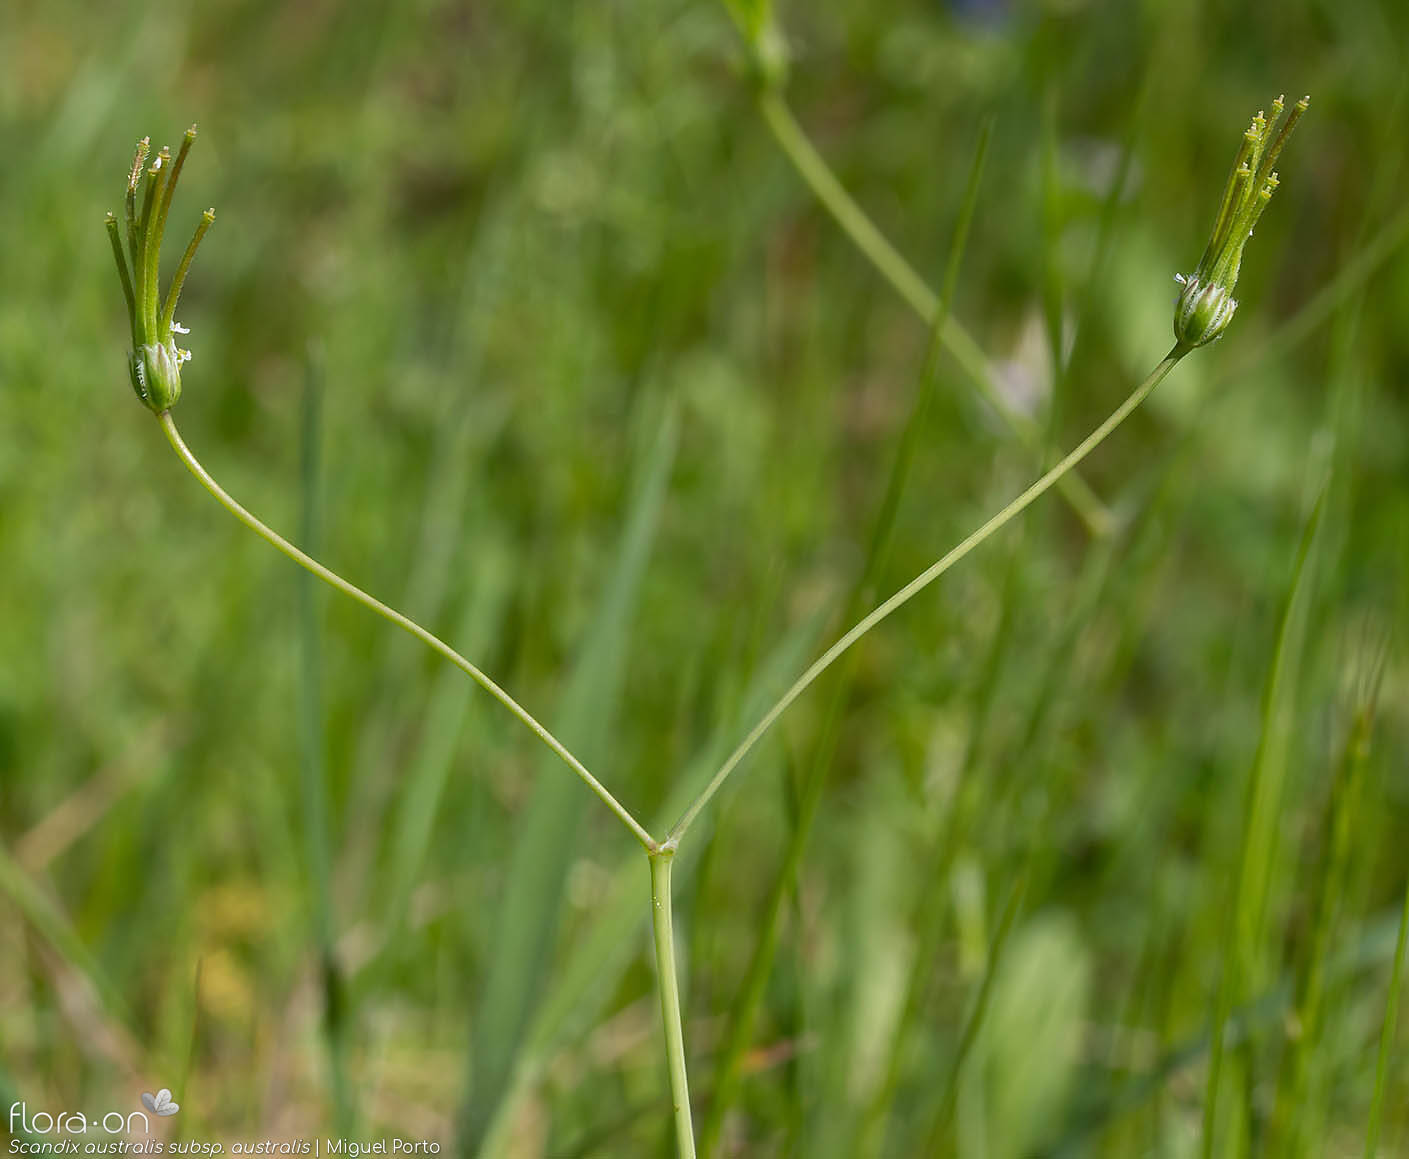 Scandix australis australis - Flor (geral) | Miguel Porto; CC BY-NC 4.0